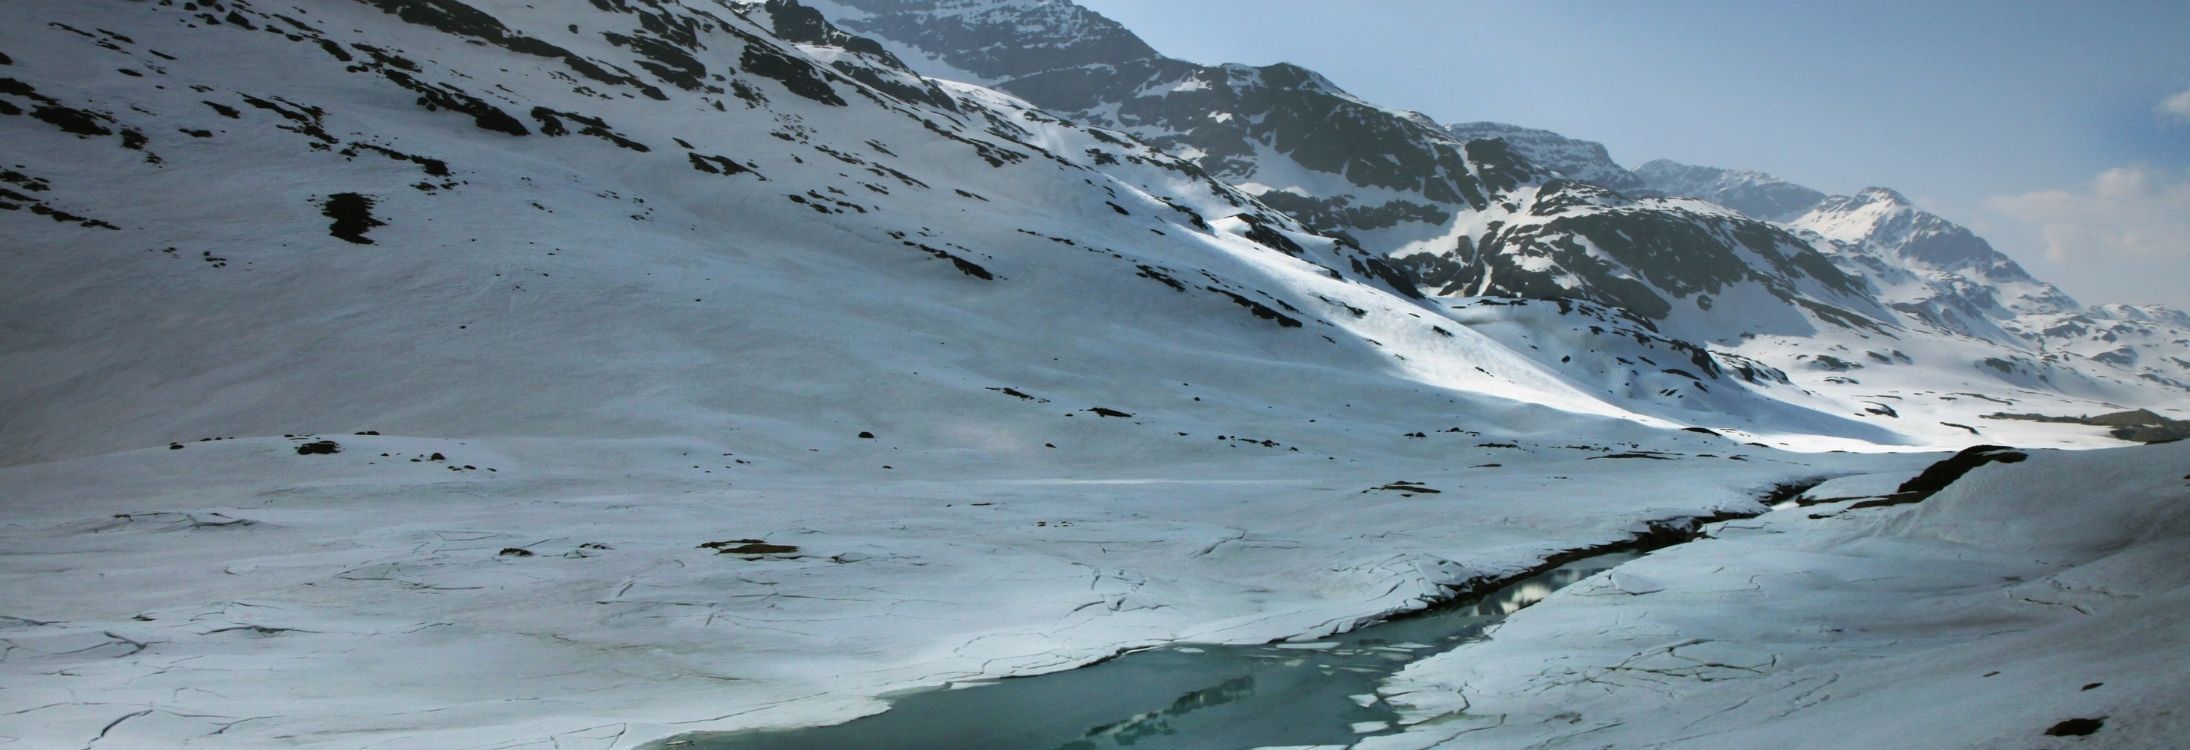 Siachen Glacier